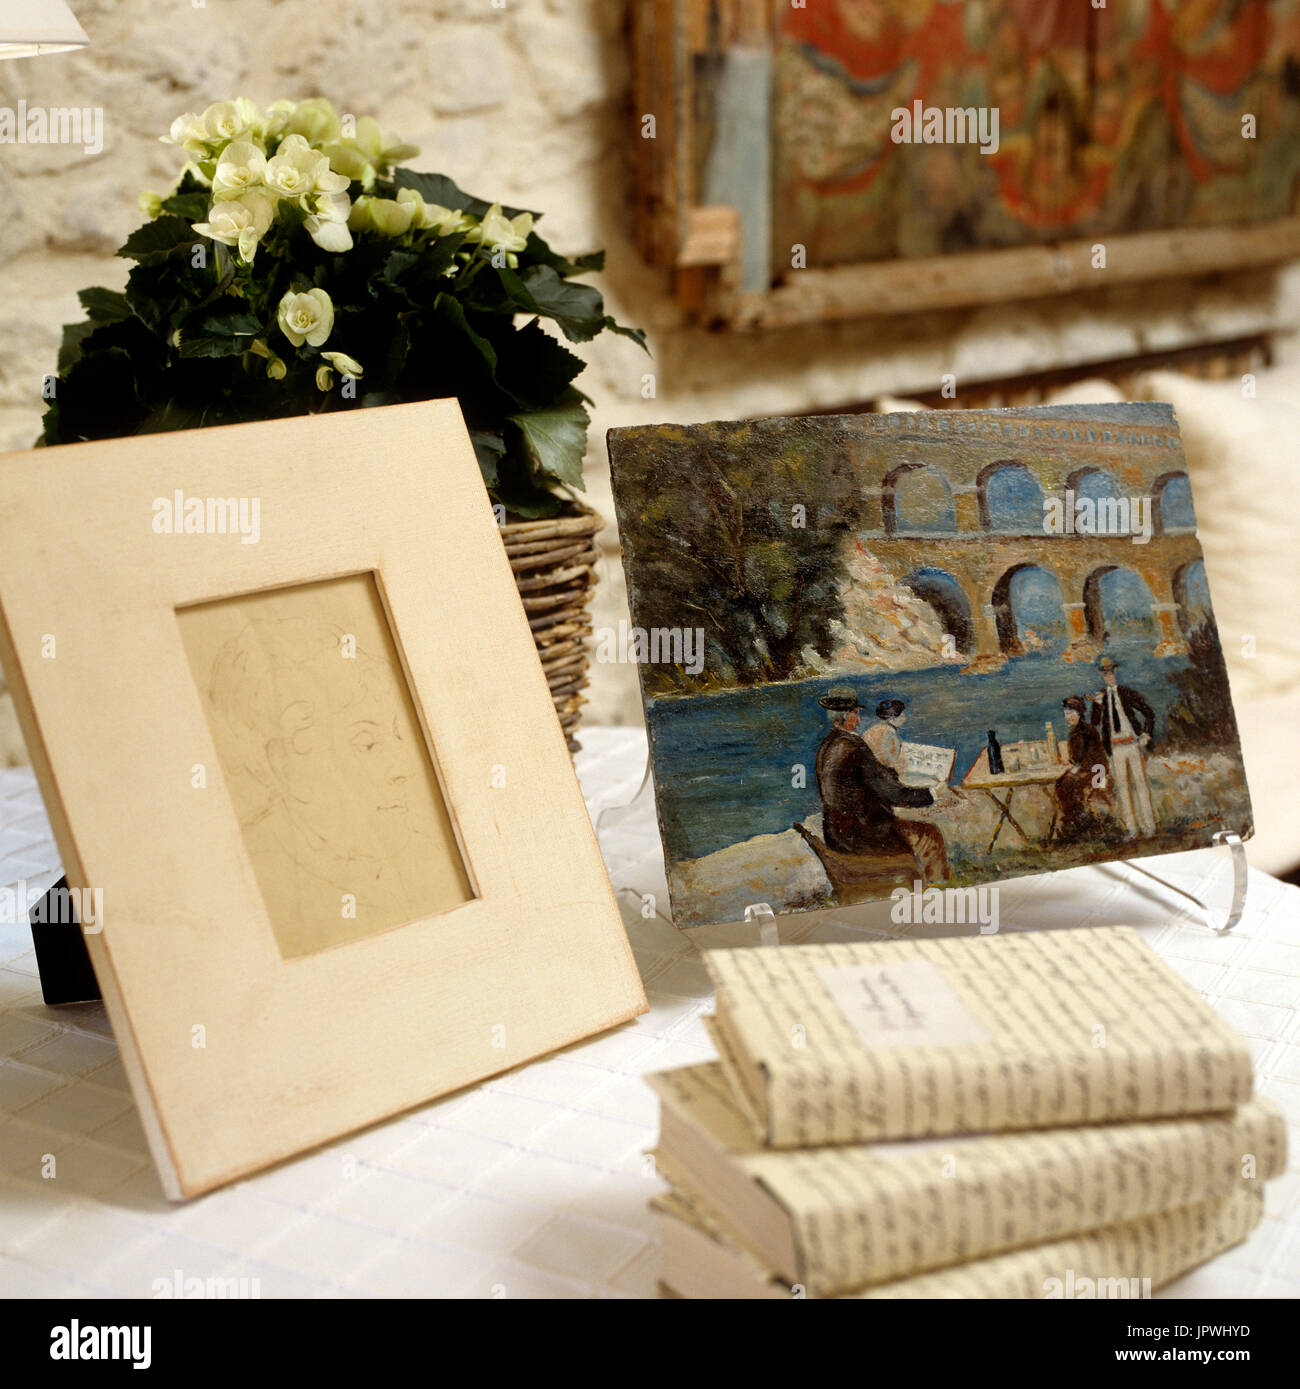 "Des livres, cadre, peinture et arrangement de fleurs sur table'small Banque D'Images